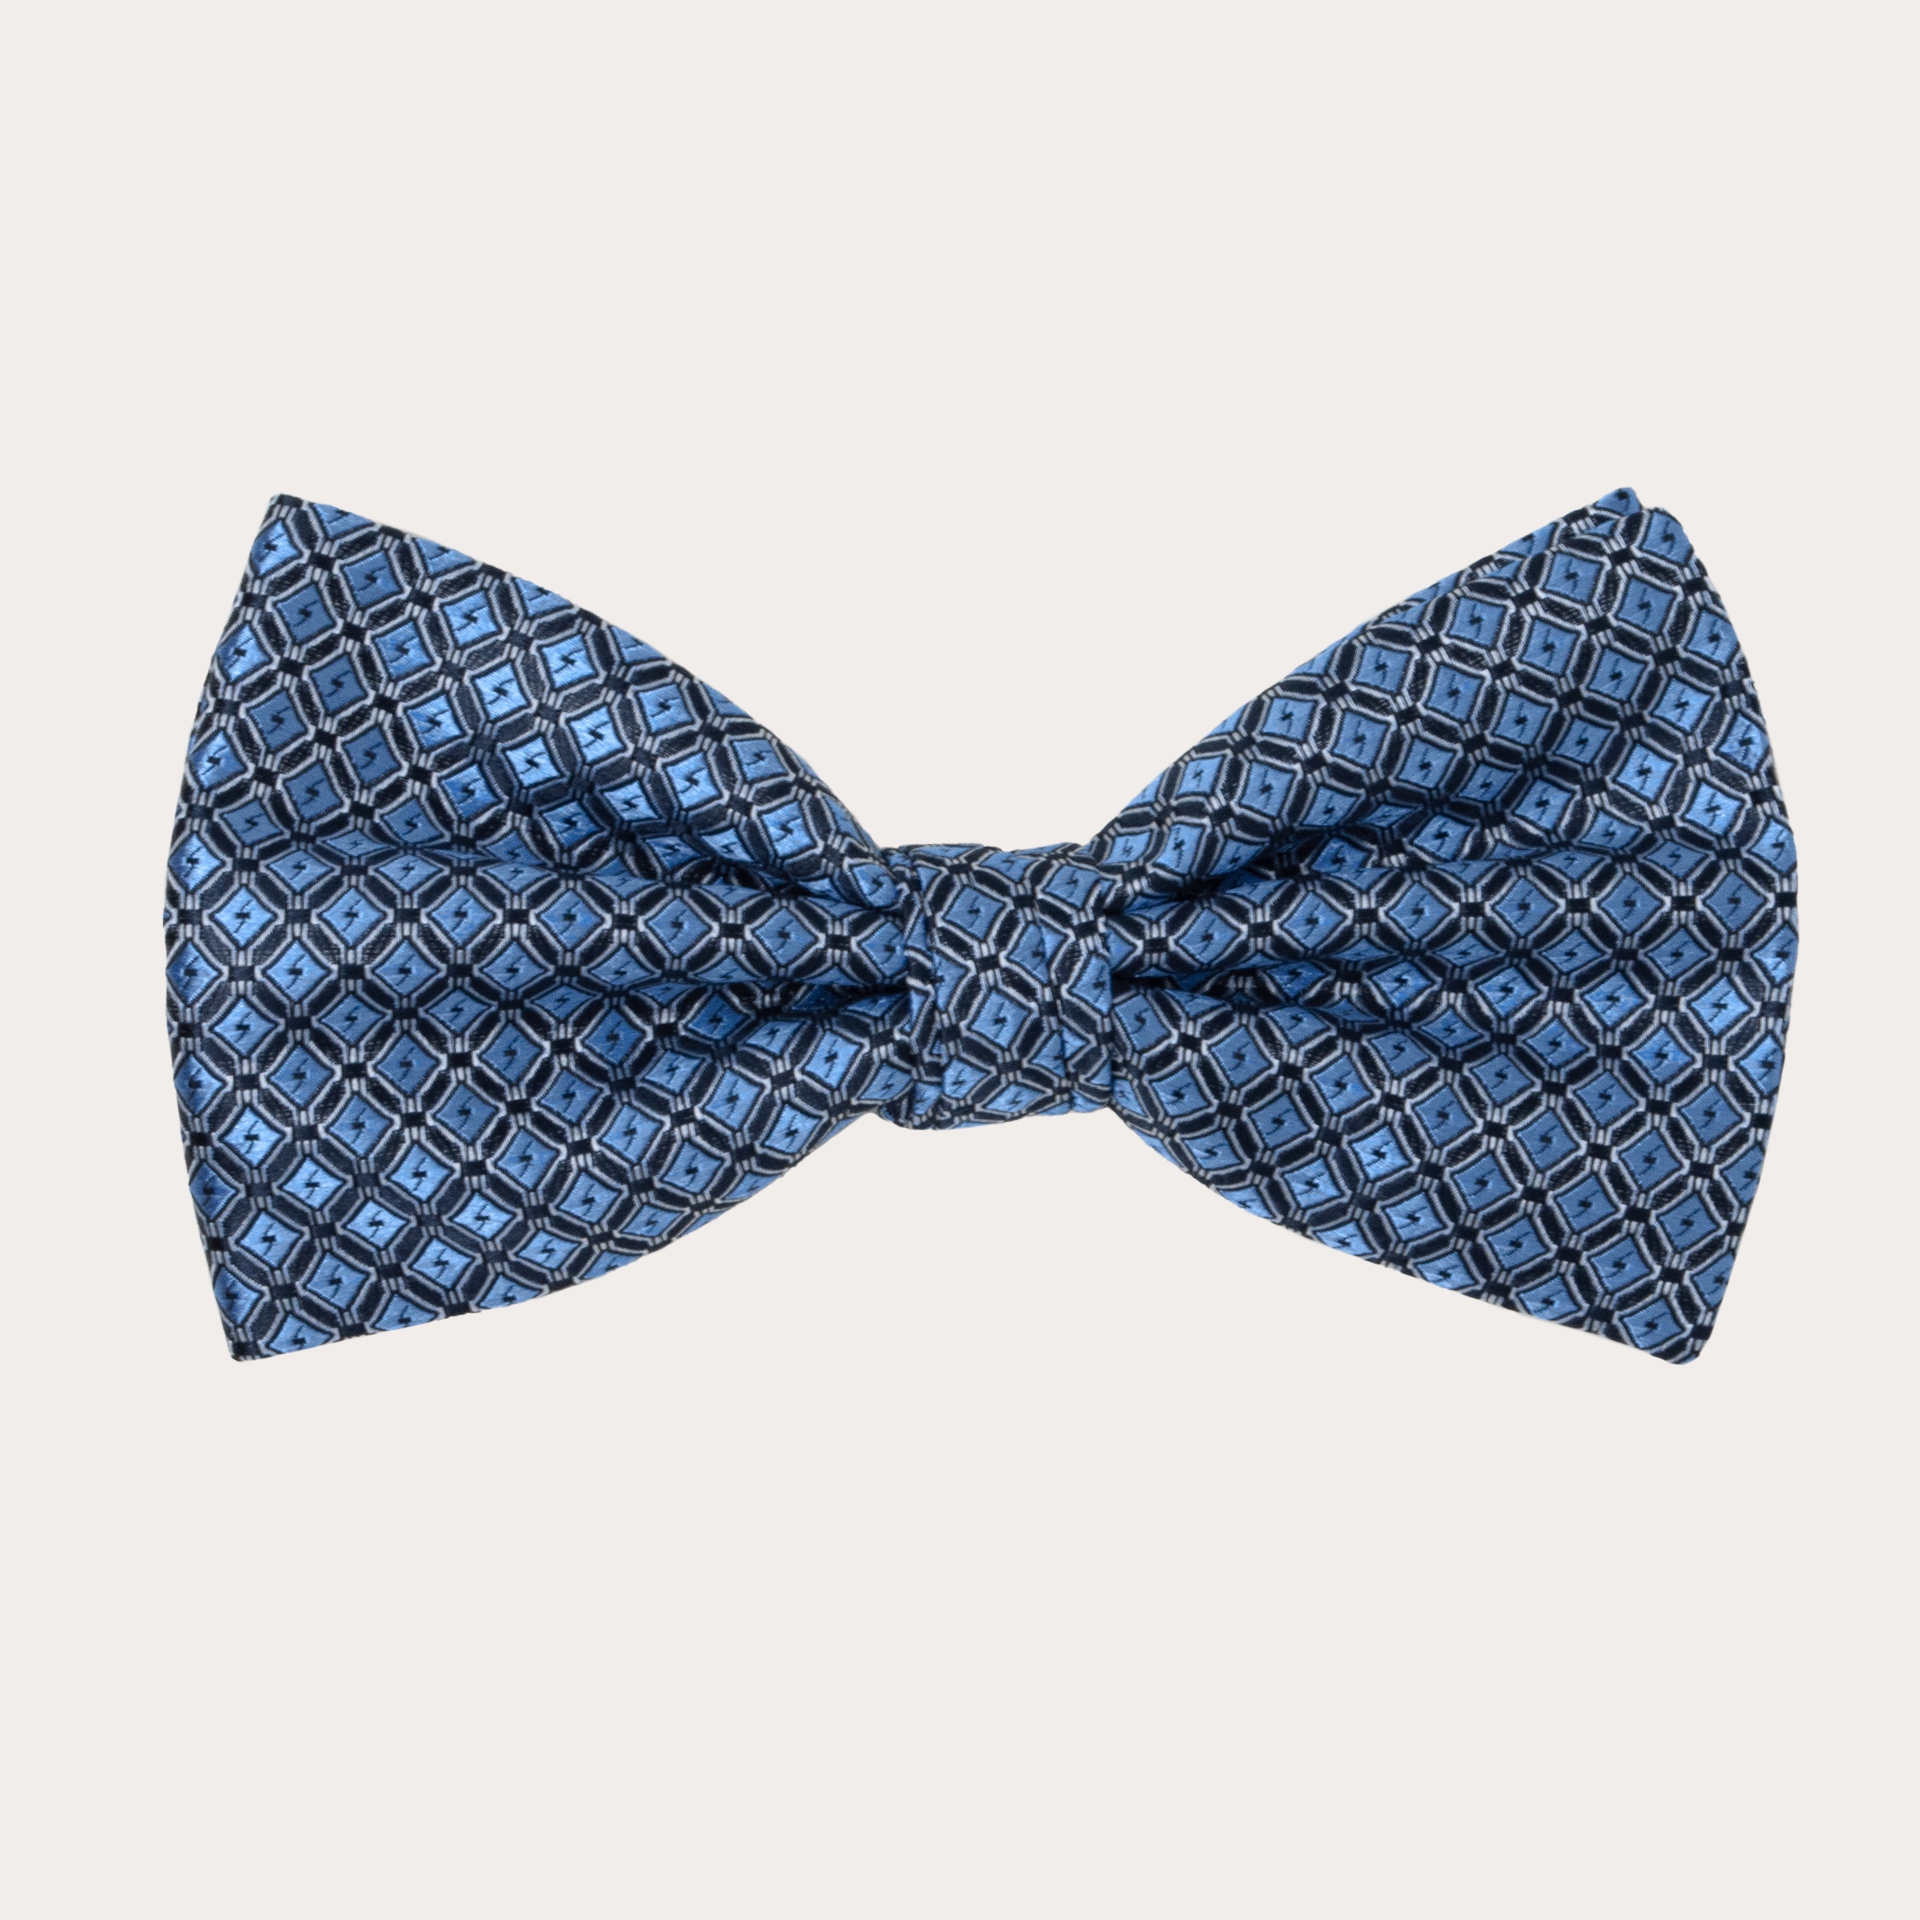 BRUCLE Pajarita en seda, azul claro con patrón de cuadrados